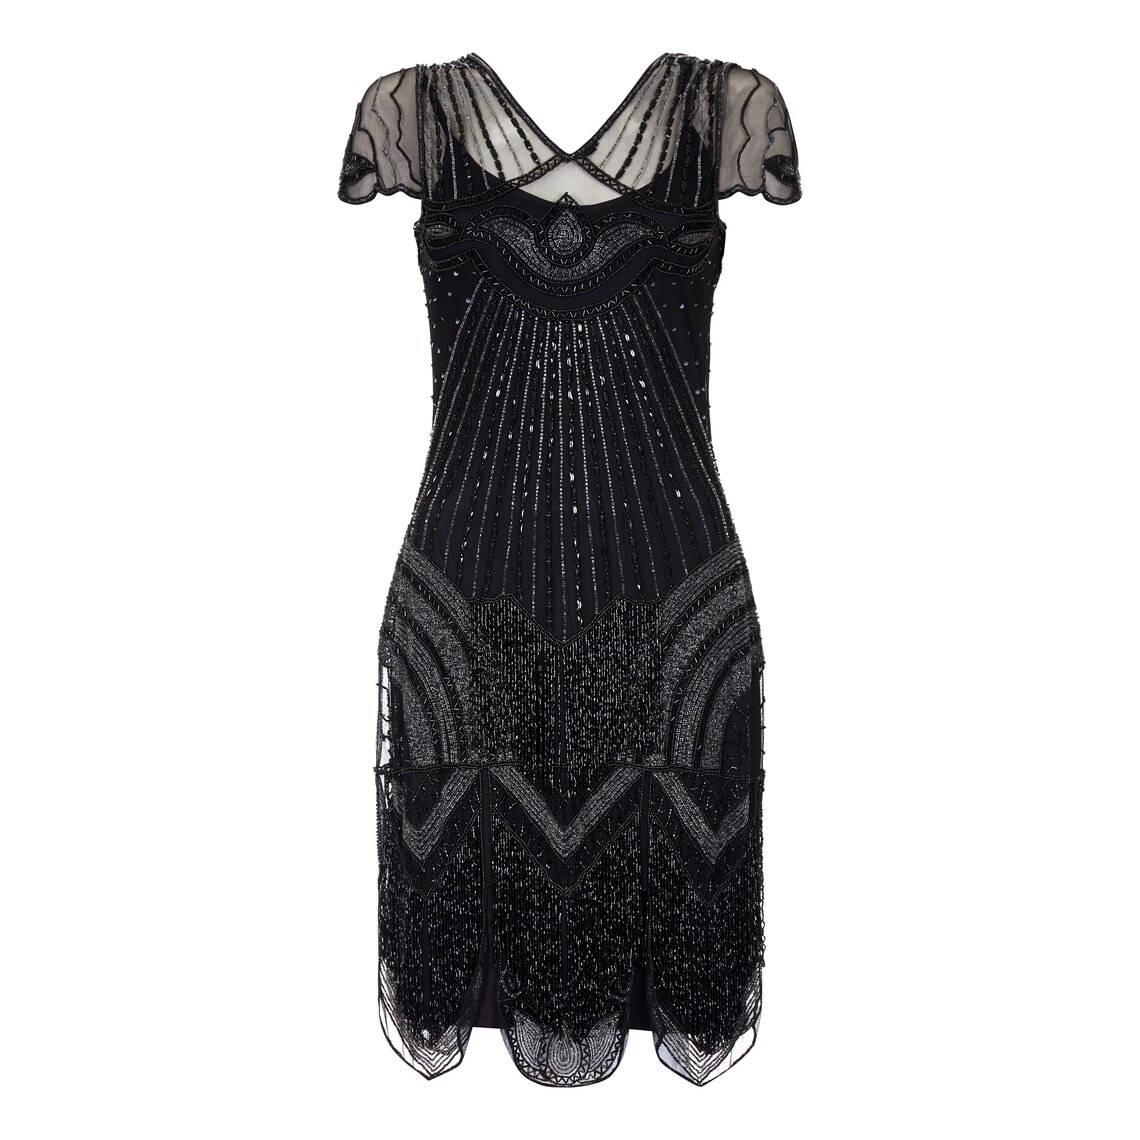 Beatrice Black Jazz Age Fringe Dress Art Deco Hand Embellished - Etsy